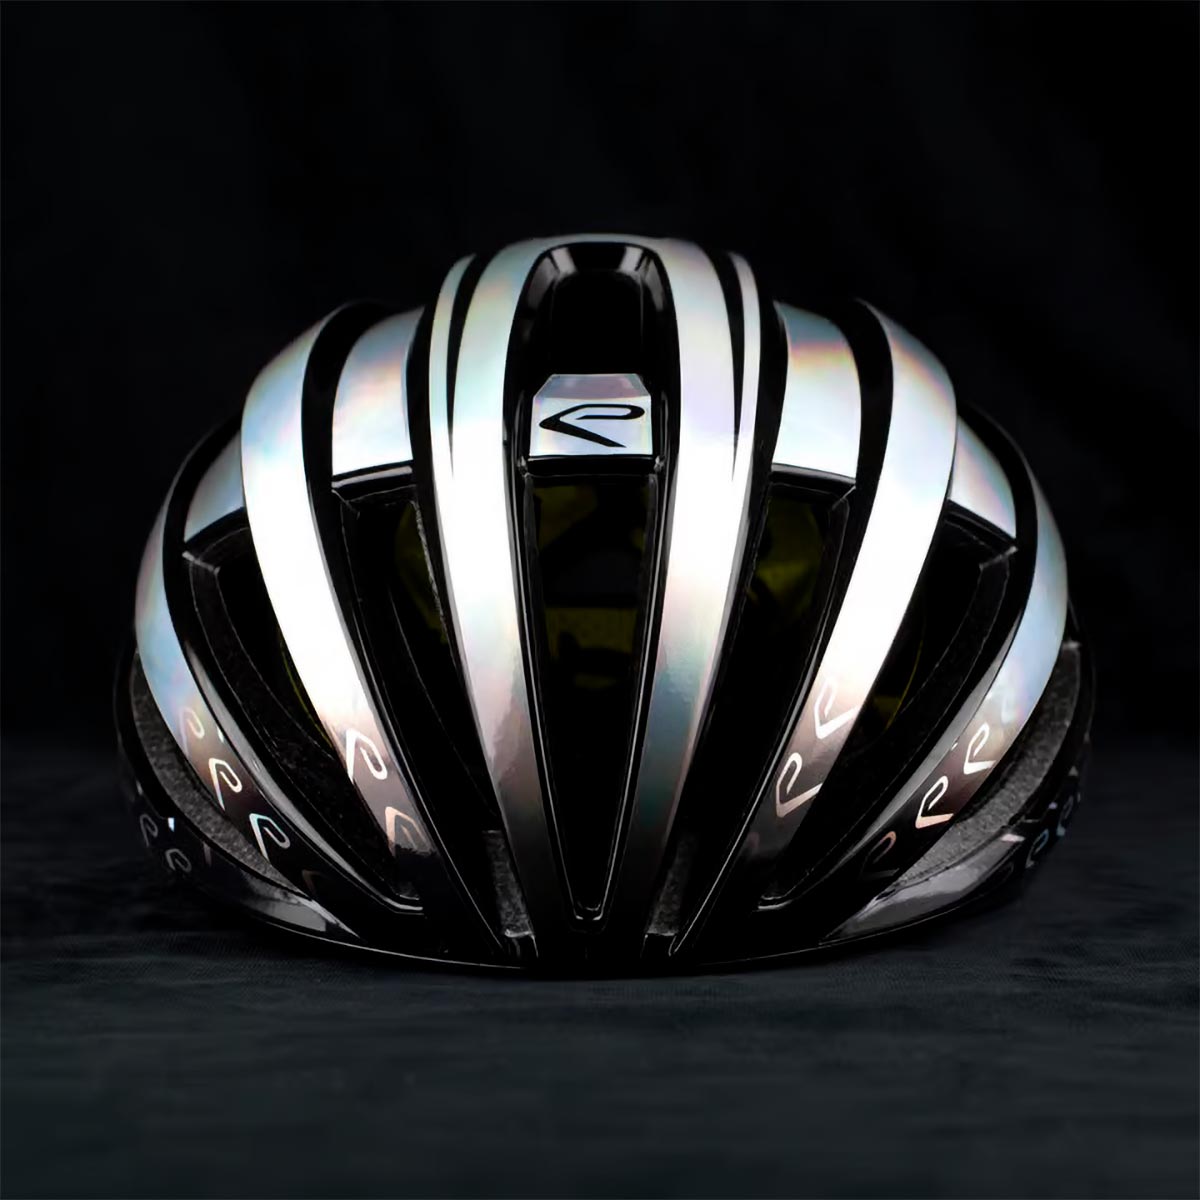 El casco Ekoï Gara MIPS estrena una llamativa edición limitada con cinco colores cromados